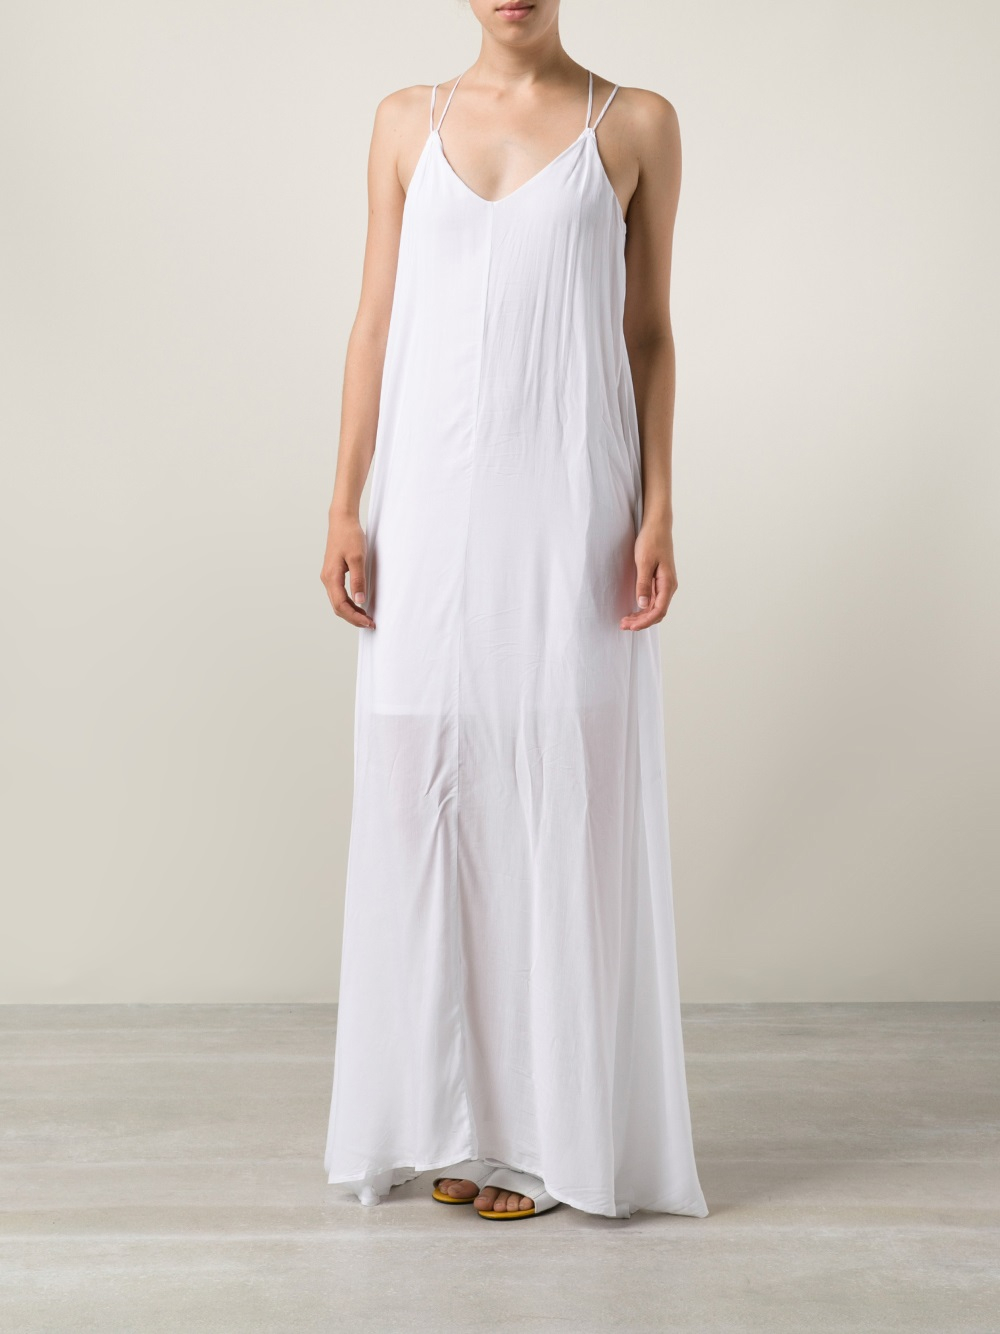 Lyst - Bella Luxx Trapeze Maxi Dress in White